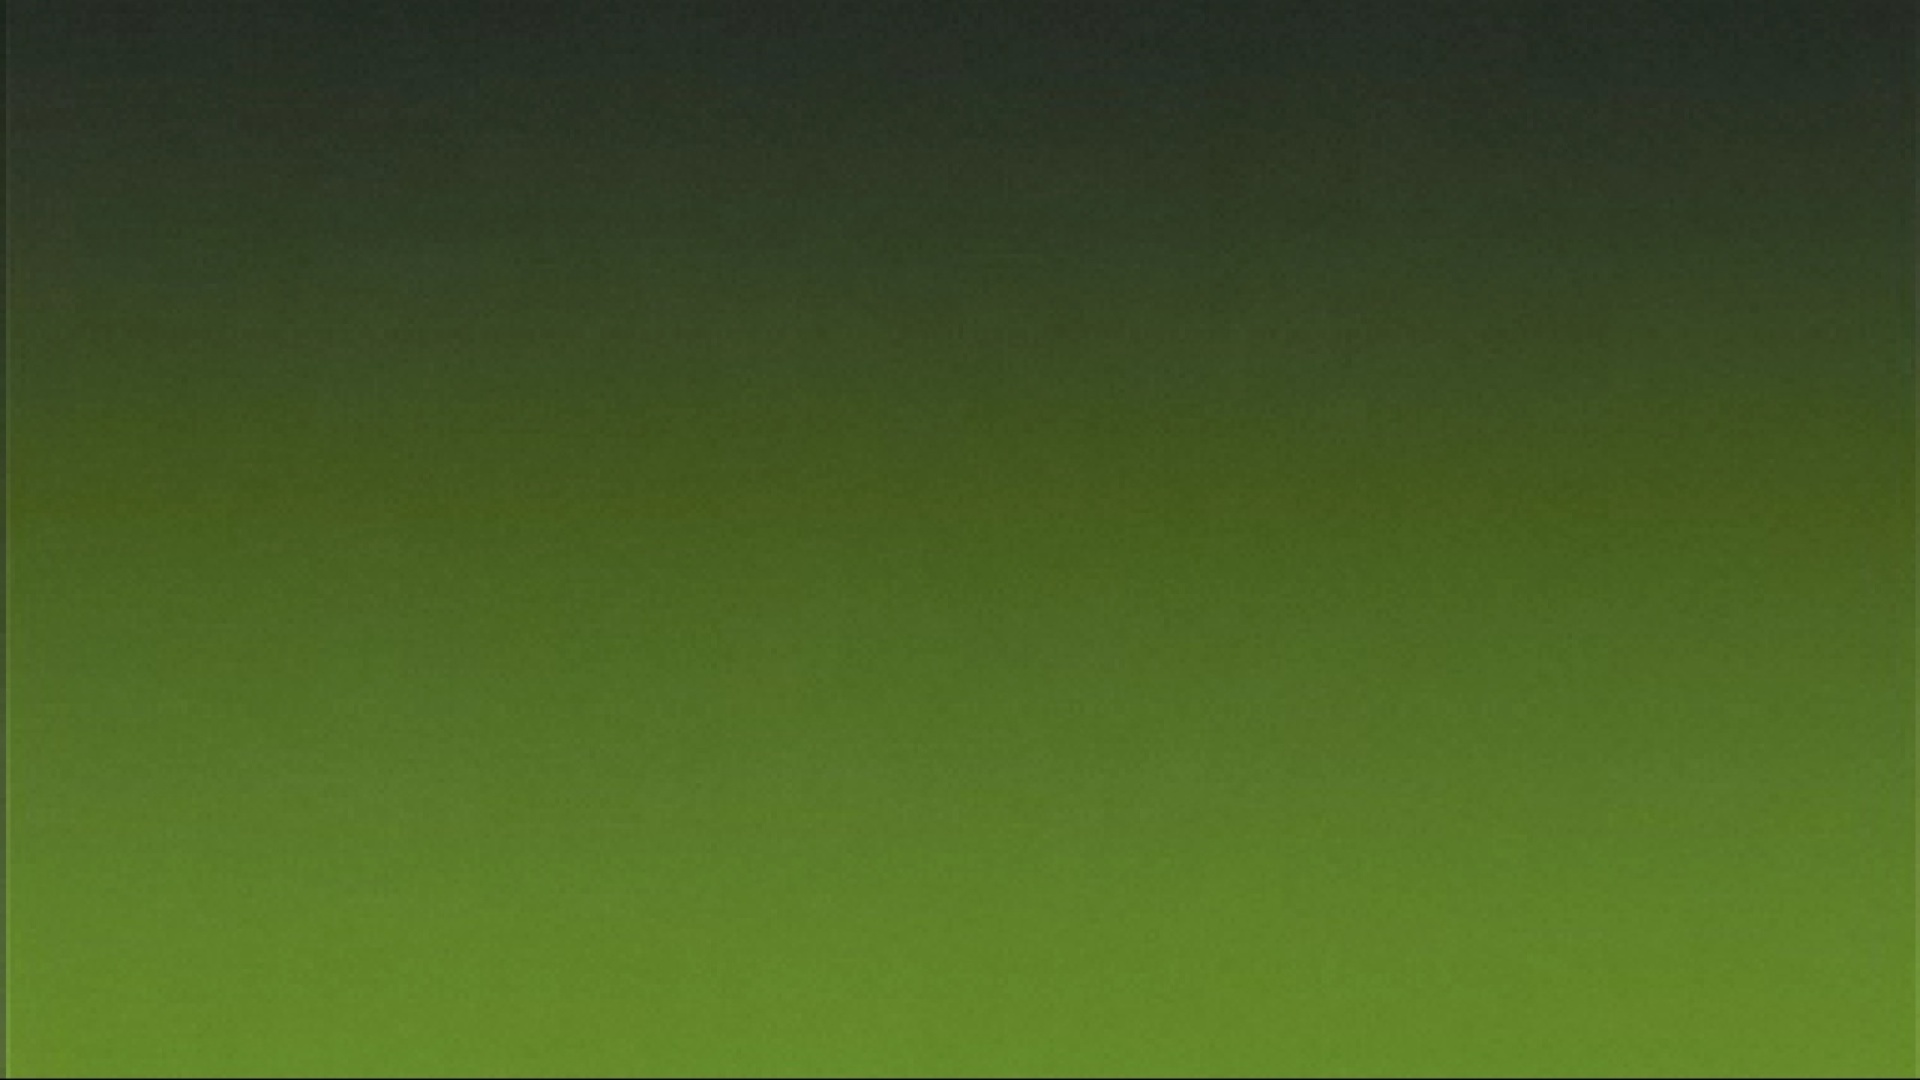 19x1080 目に優しい緑色系の きれいな壁紙 フルhd 19x1080 目に優しい緑色系の きれいな壁紙 フルhd Naver まとめ